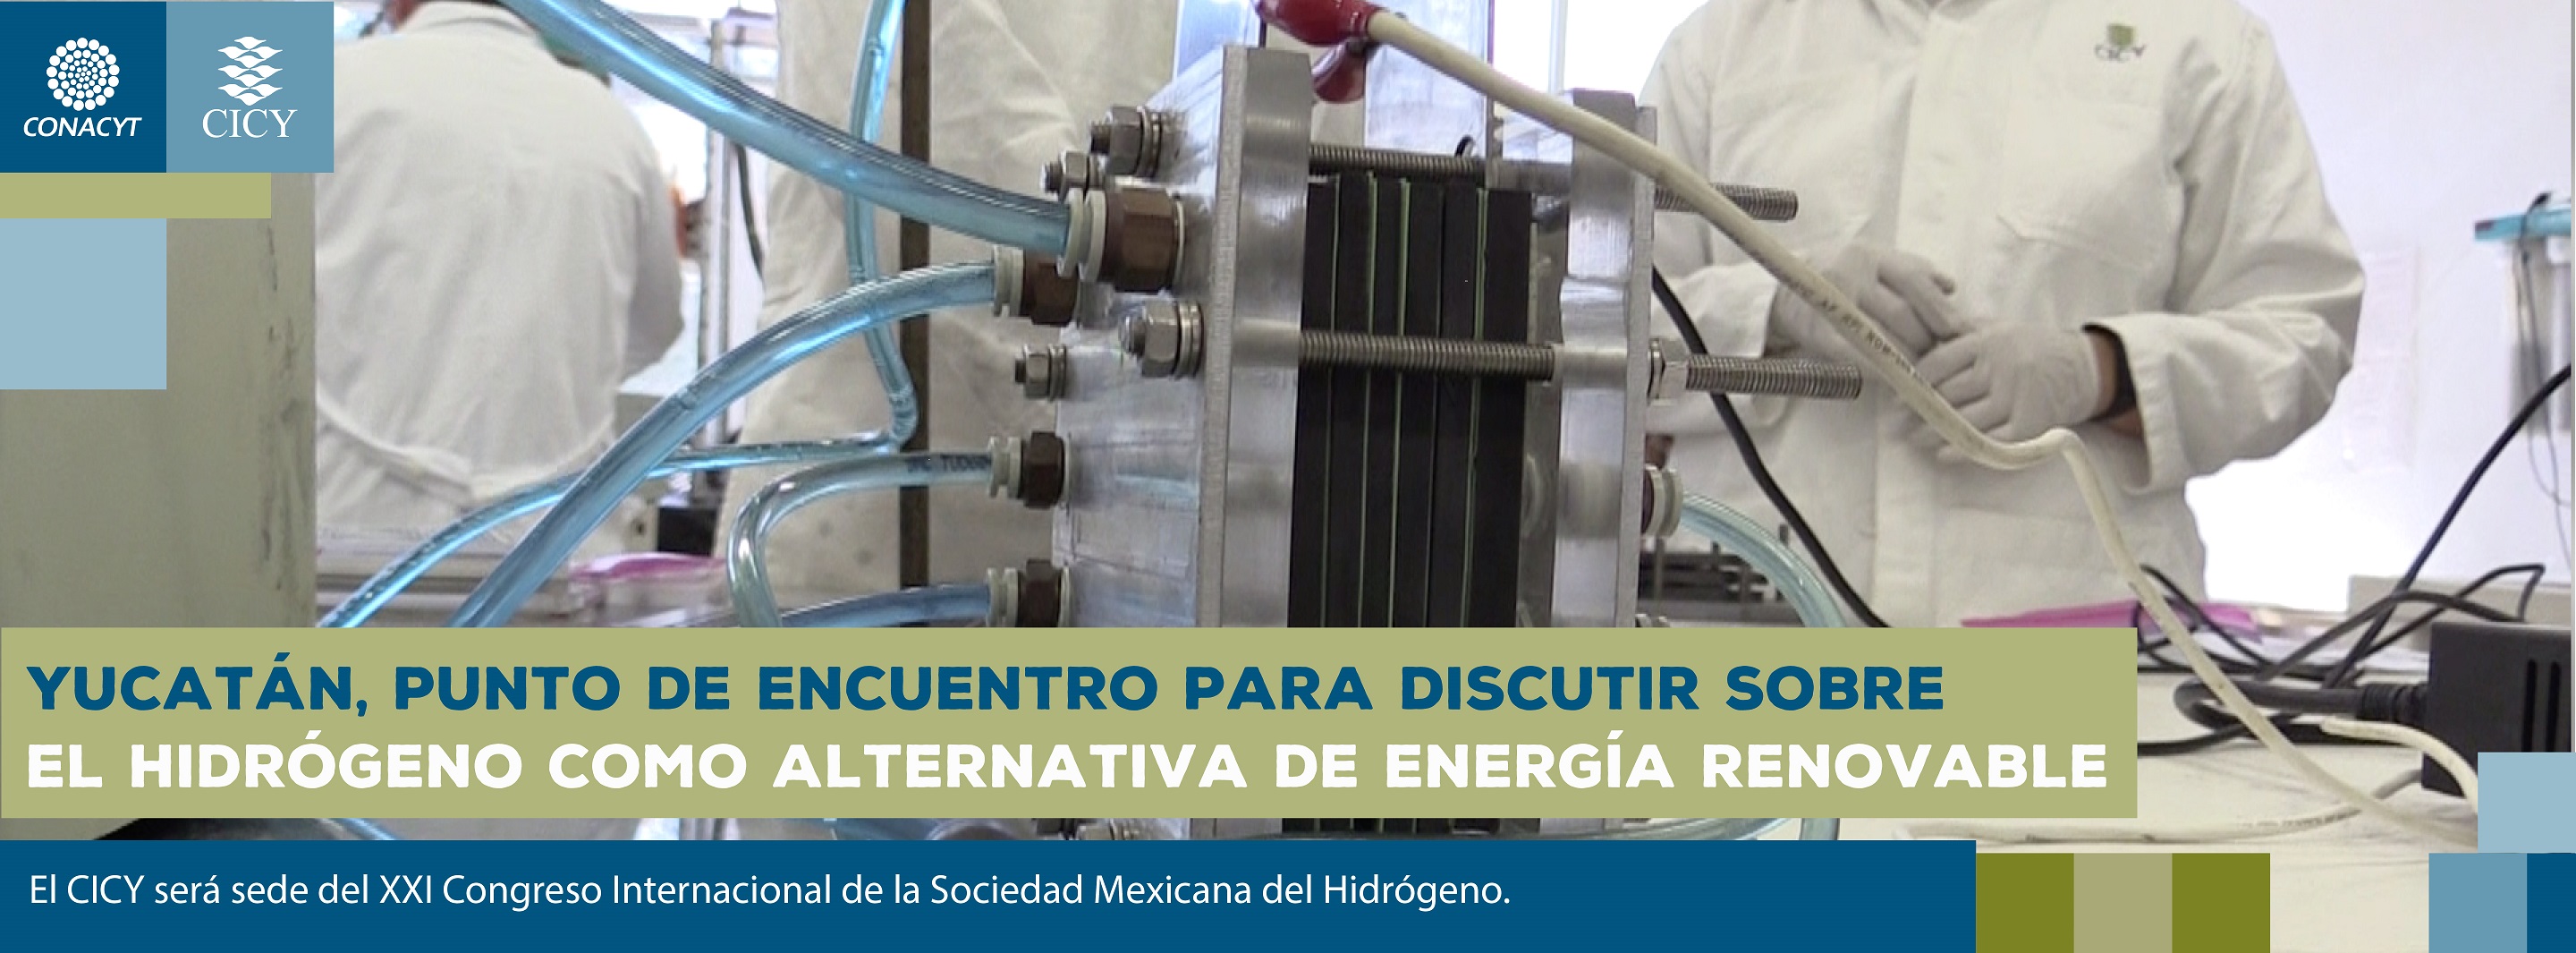 Yucatán, punto de encuentro para discutir sobre el Hidrógeno como alternativa de energía renovable